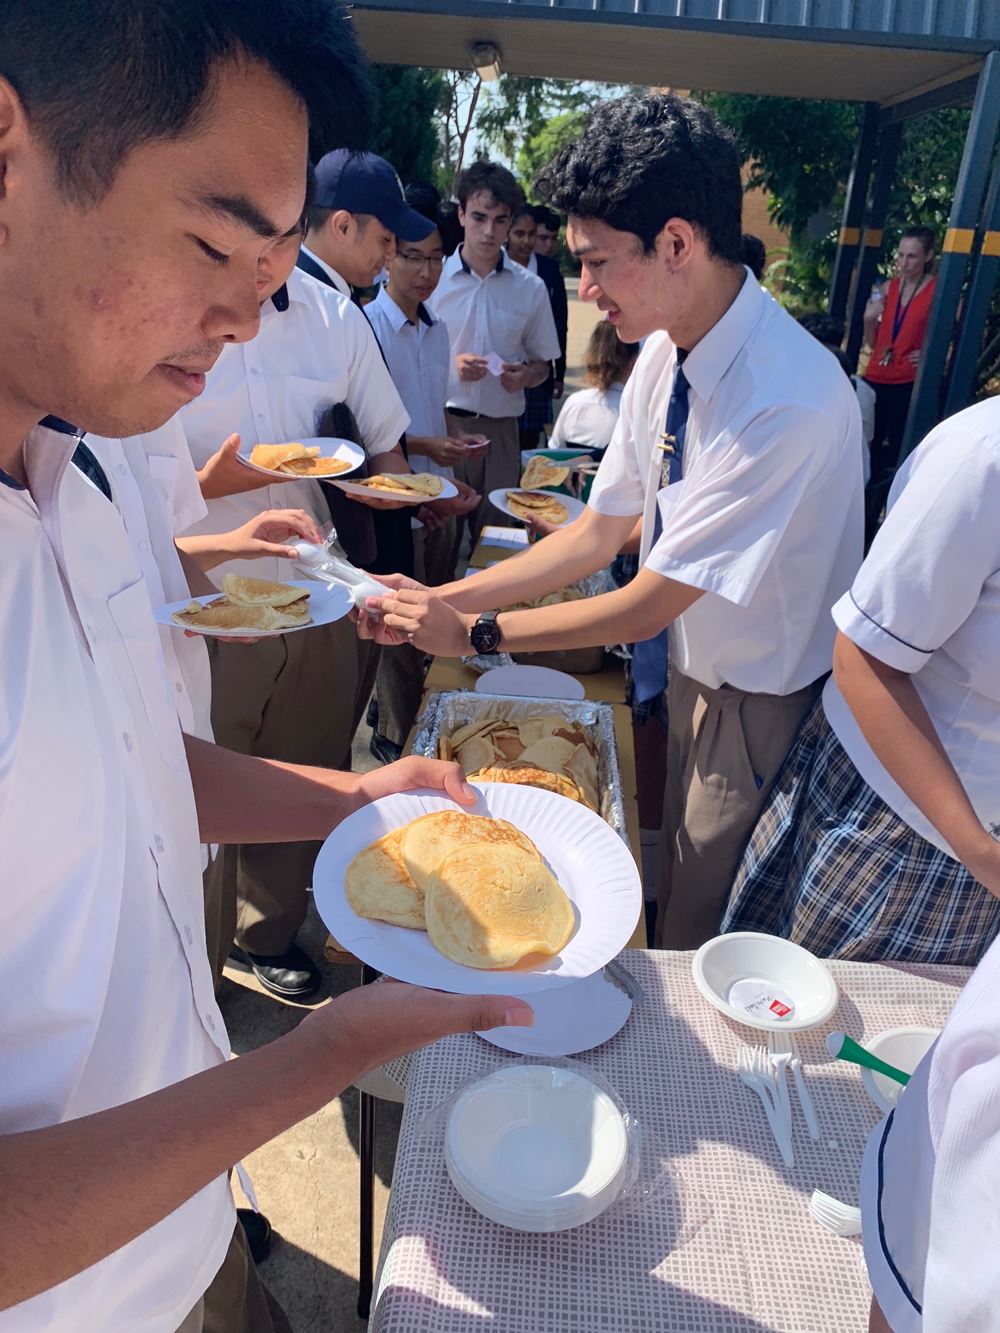 Senior Campus Pancake Day Photo 10